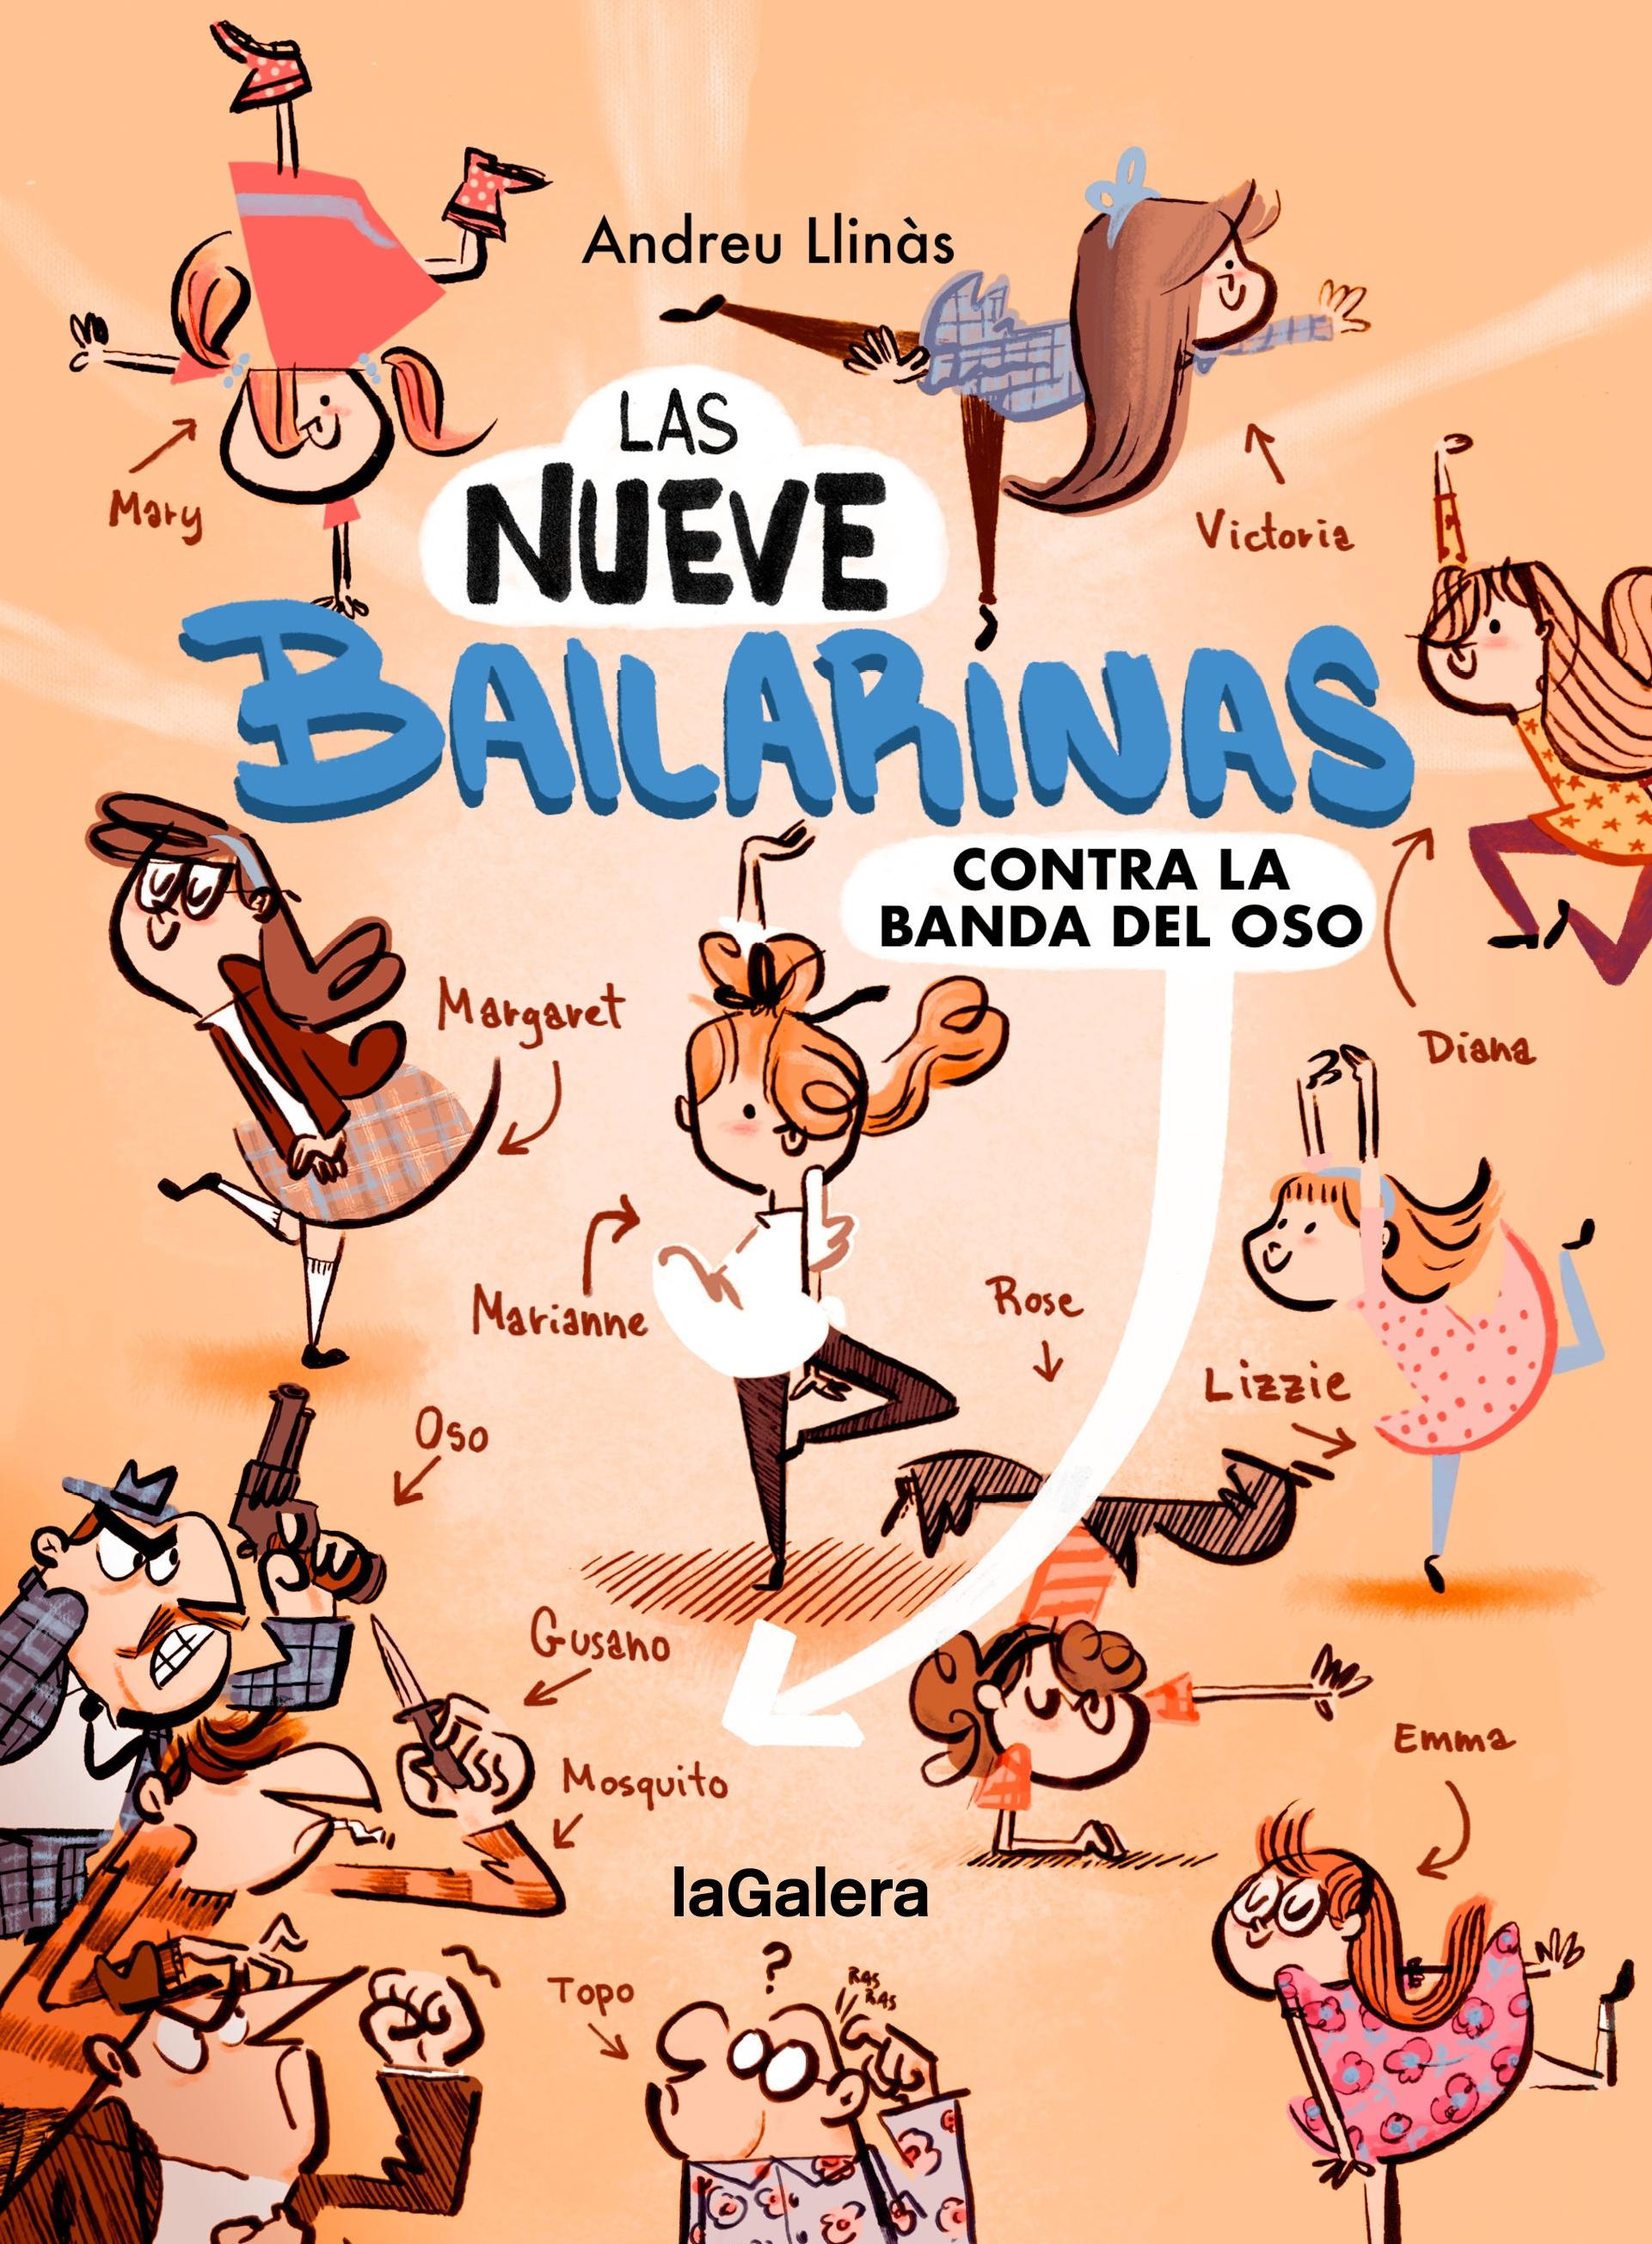 Las Nueve Bailarinas 1 "Contra la Banda del Oso ". 